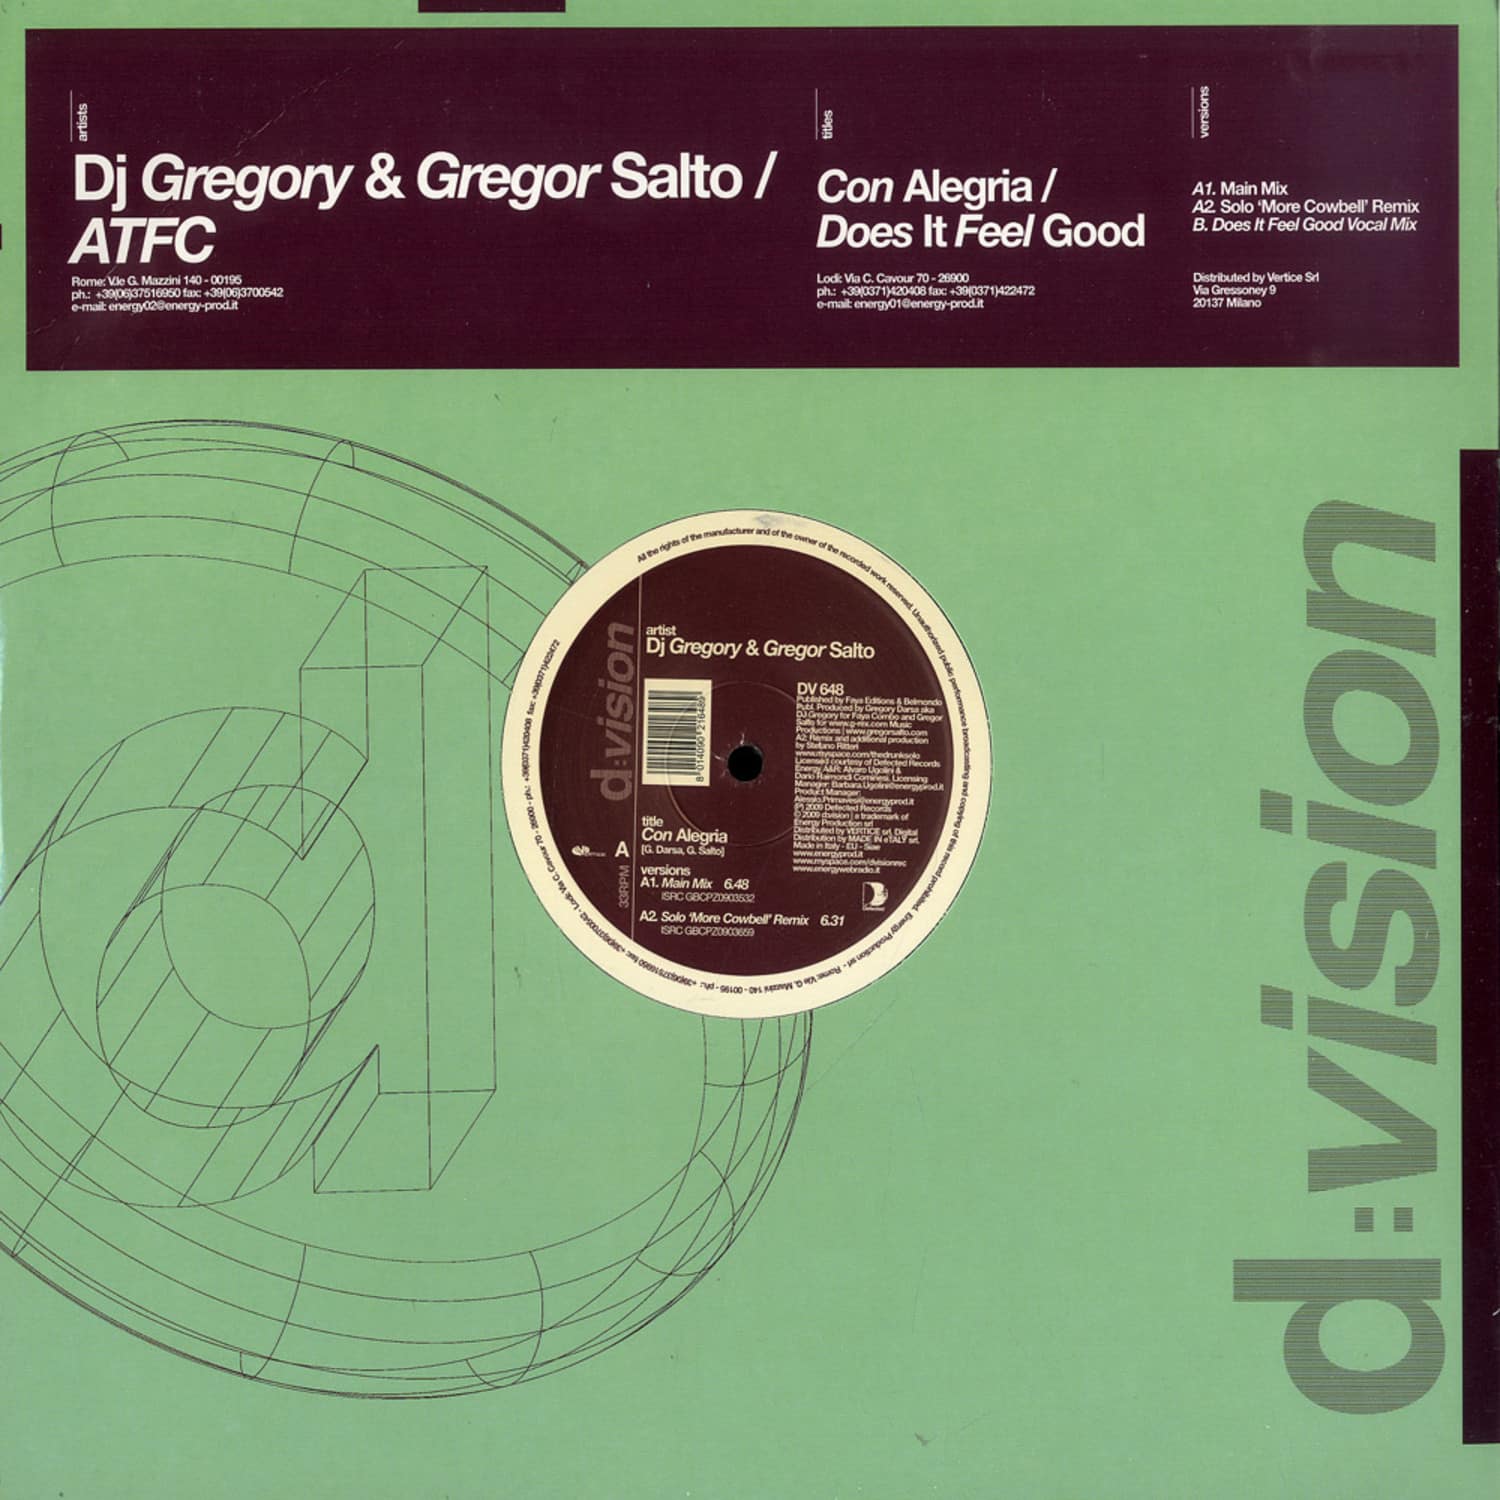 Dj Gregory & Gregor Salto / ATFC - CON ALEGRIA / DOES IT FEEL GOOD